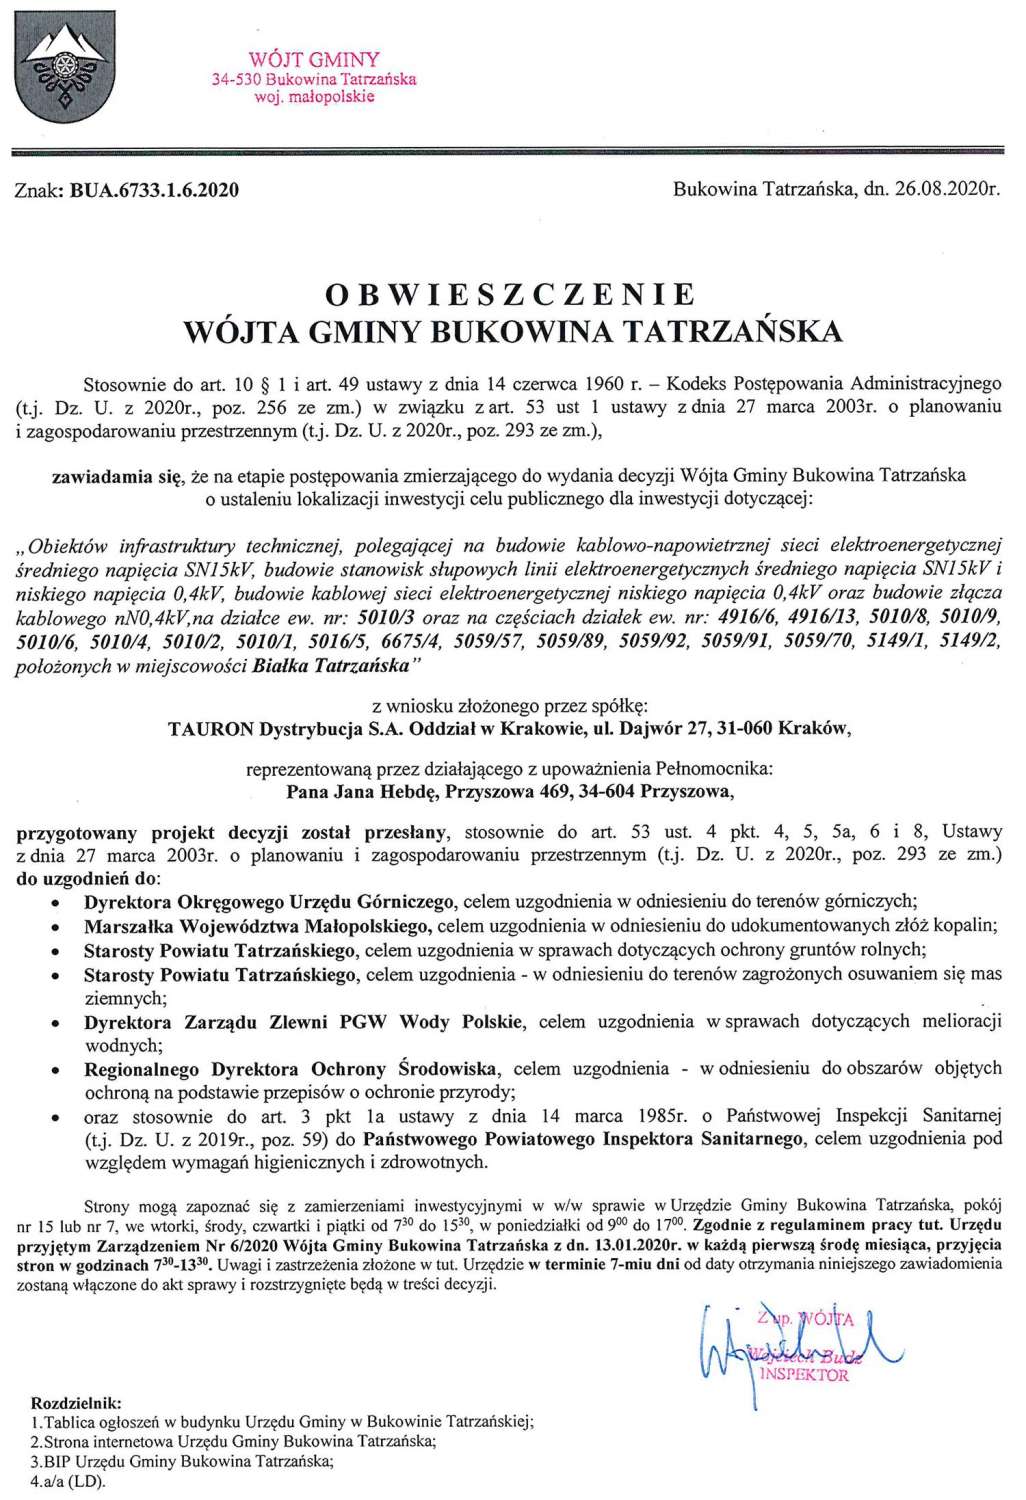 Obwieszczenie Wójta Gminy Bukowina Tatrzańska BUA 6733.1.6.2020